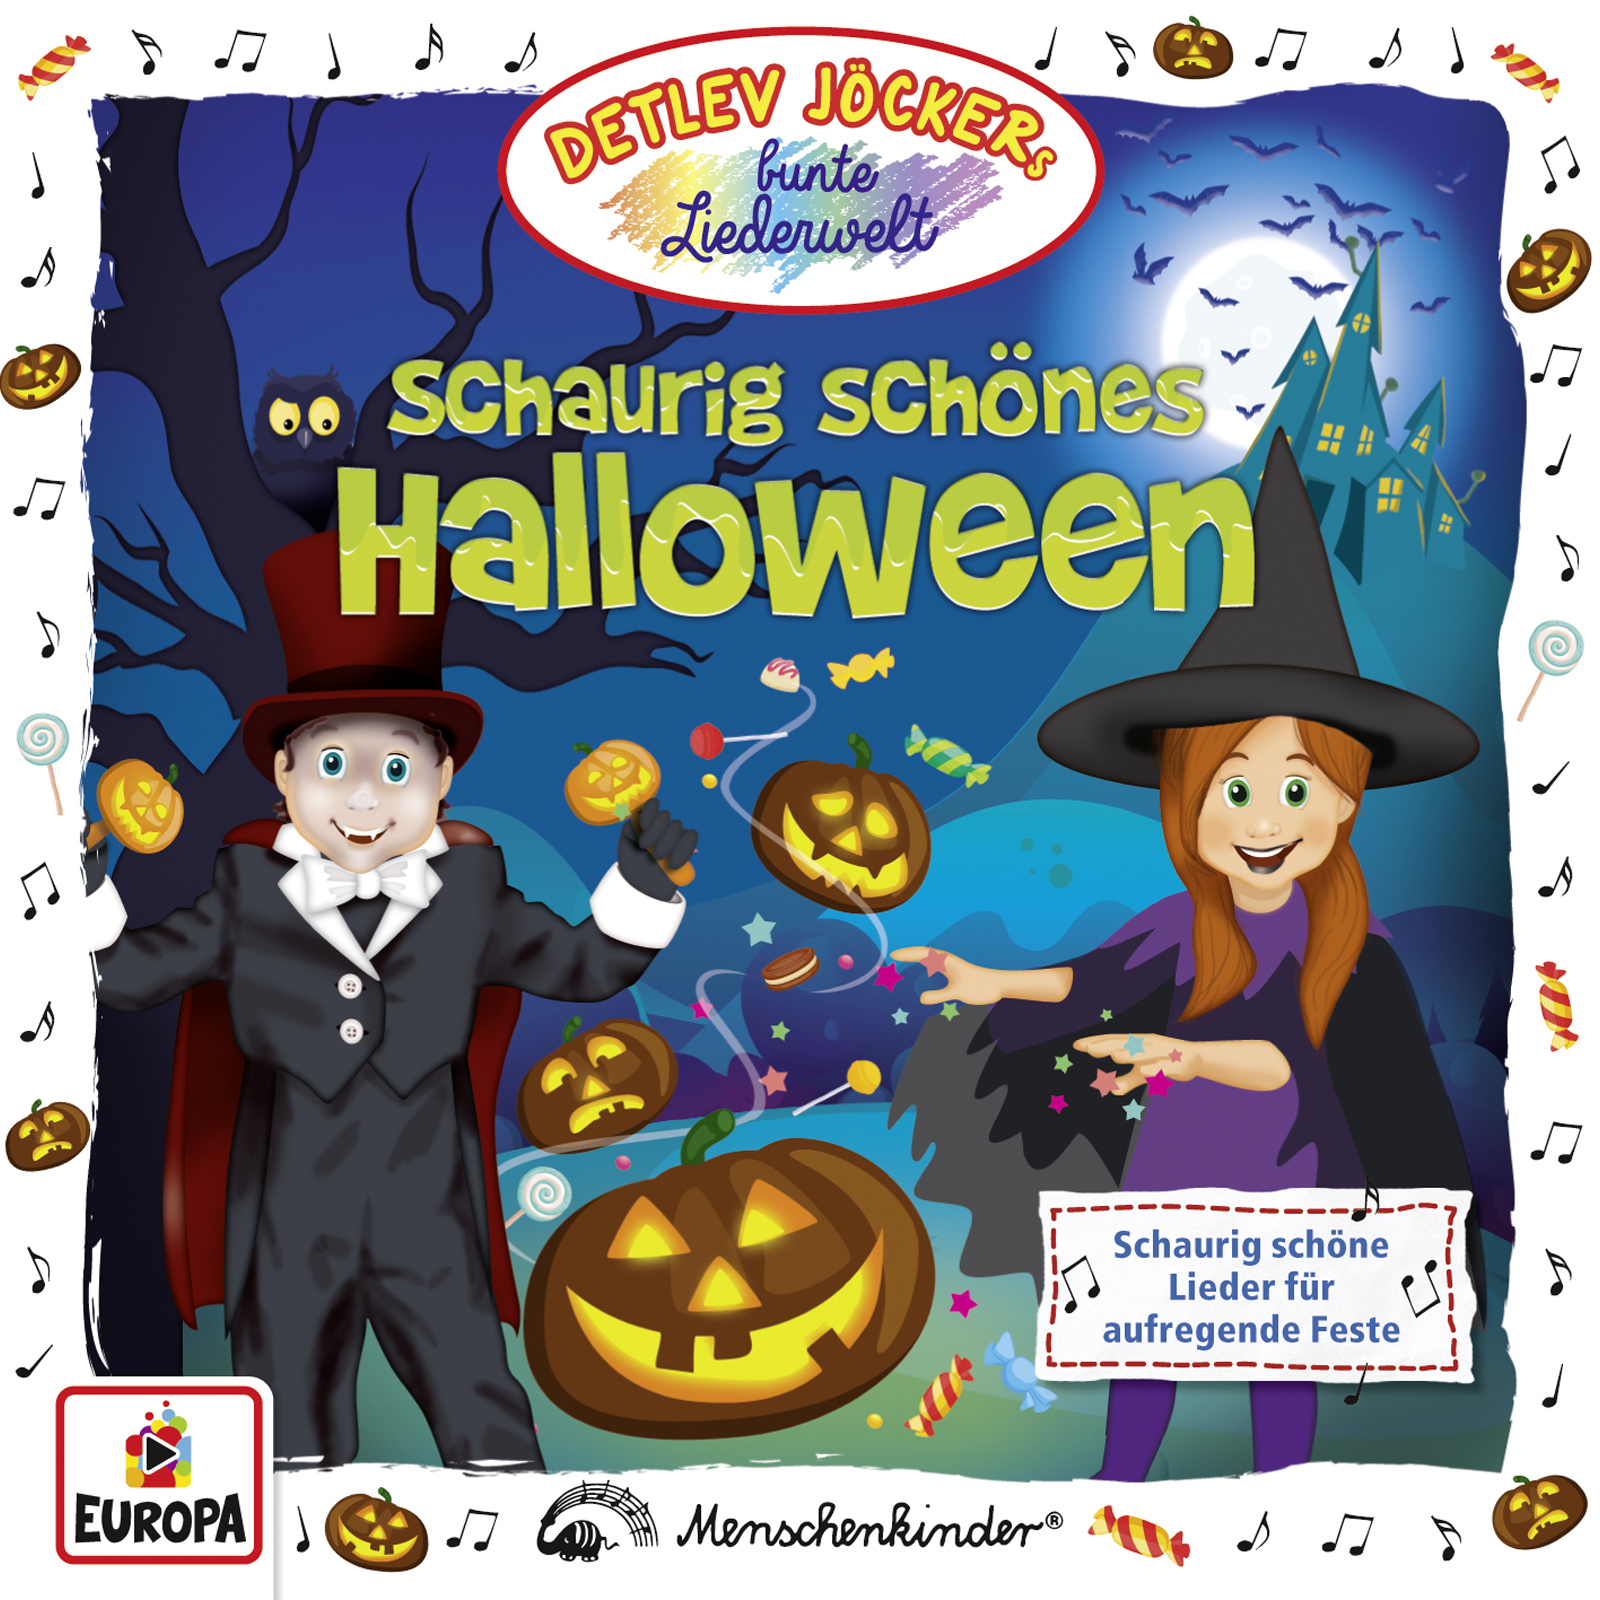 Detlev Jöcker - Schaurig-schönes Halloween